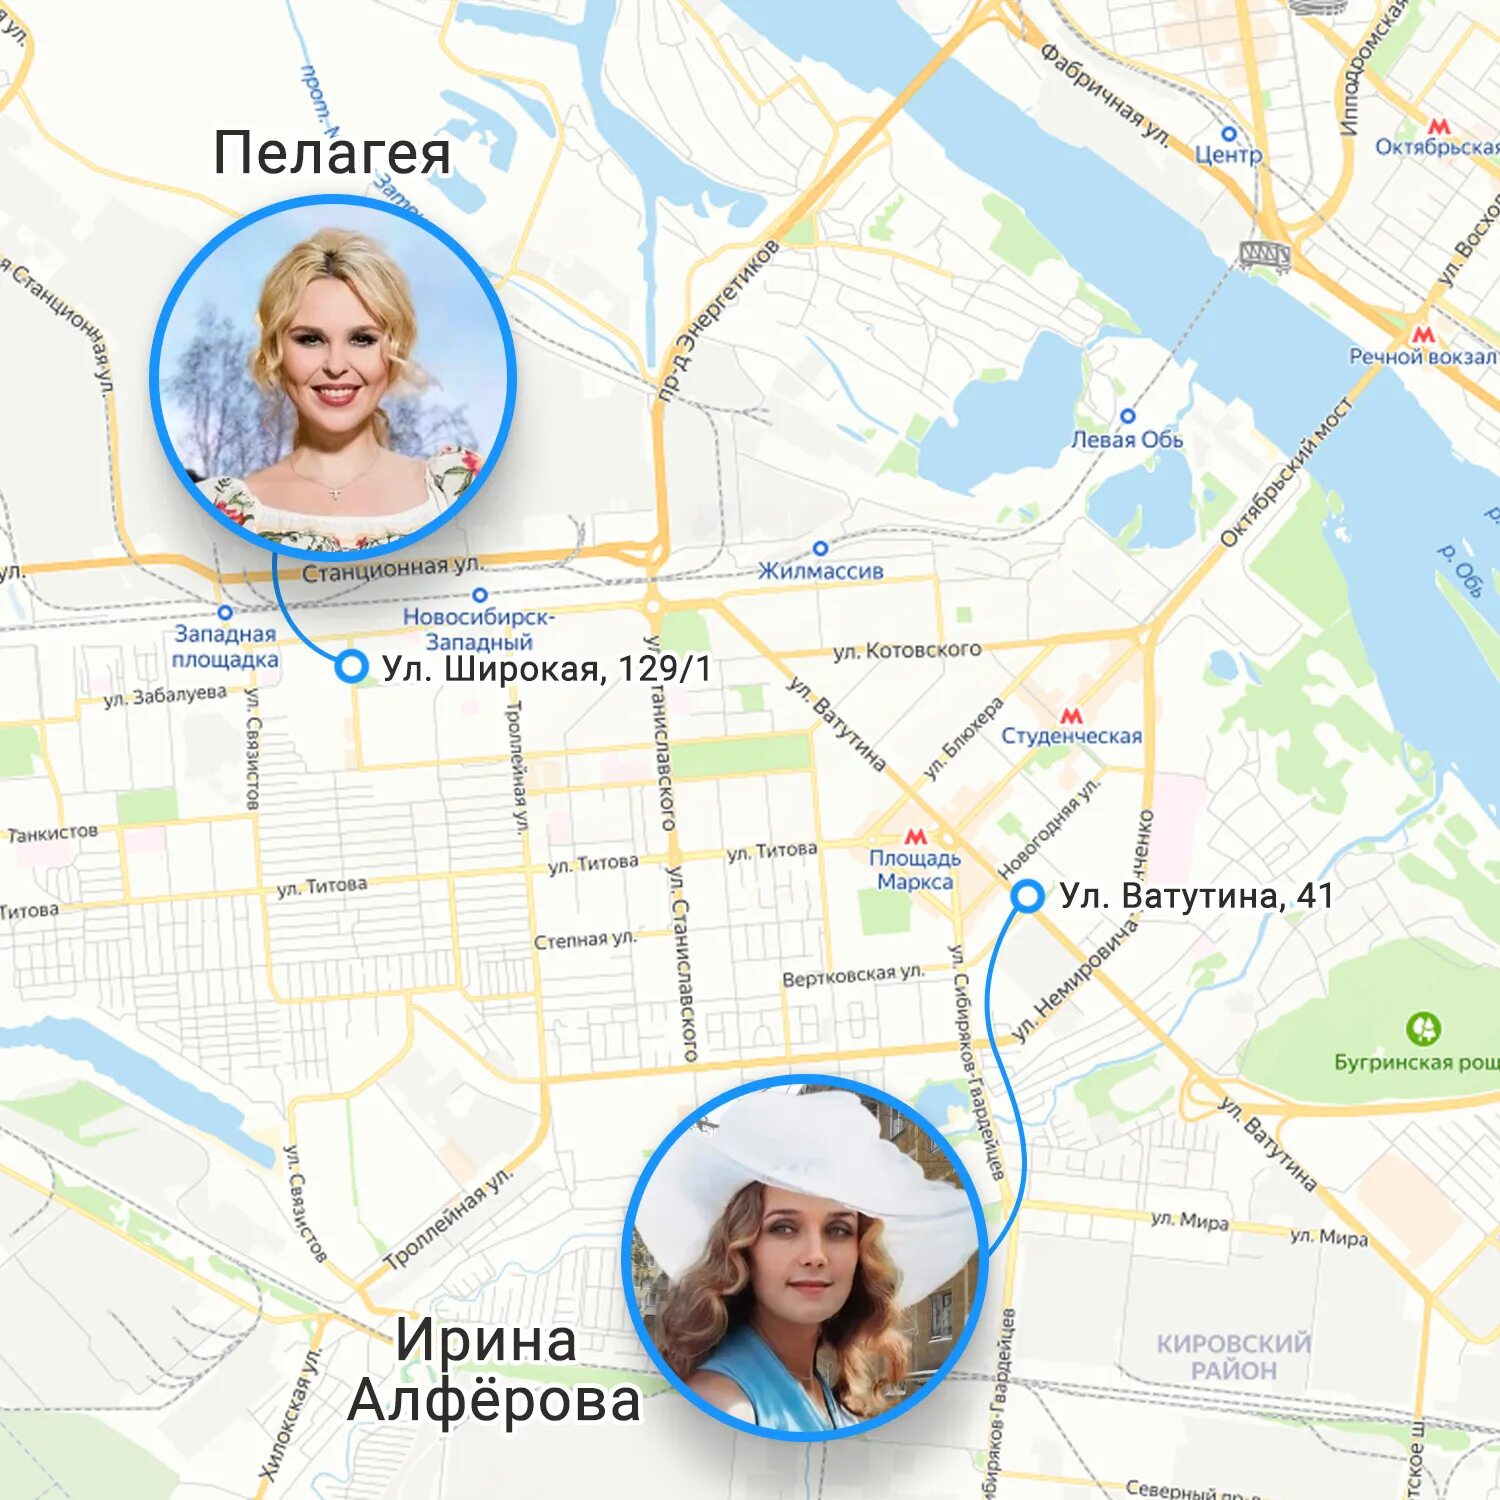 Какие известные люди живут в новосибирске. Знаменитости Новосибирска. Какие знаменитости живут в Новосибирске. Где живут звезды в Москве карта. Известные люди жившие в Новосибирске.